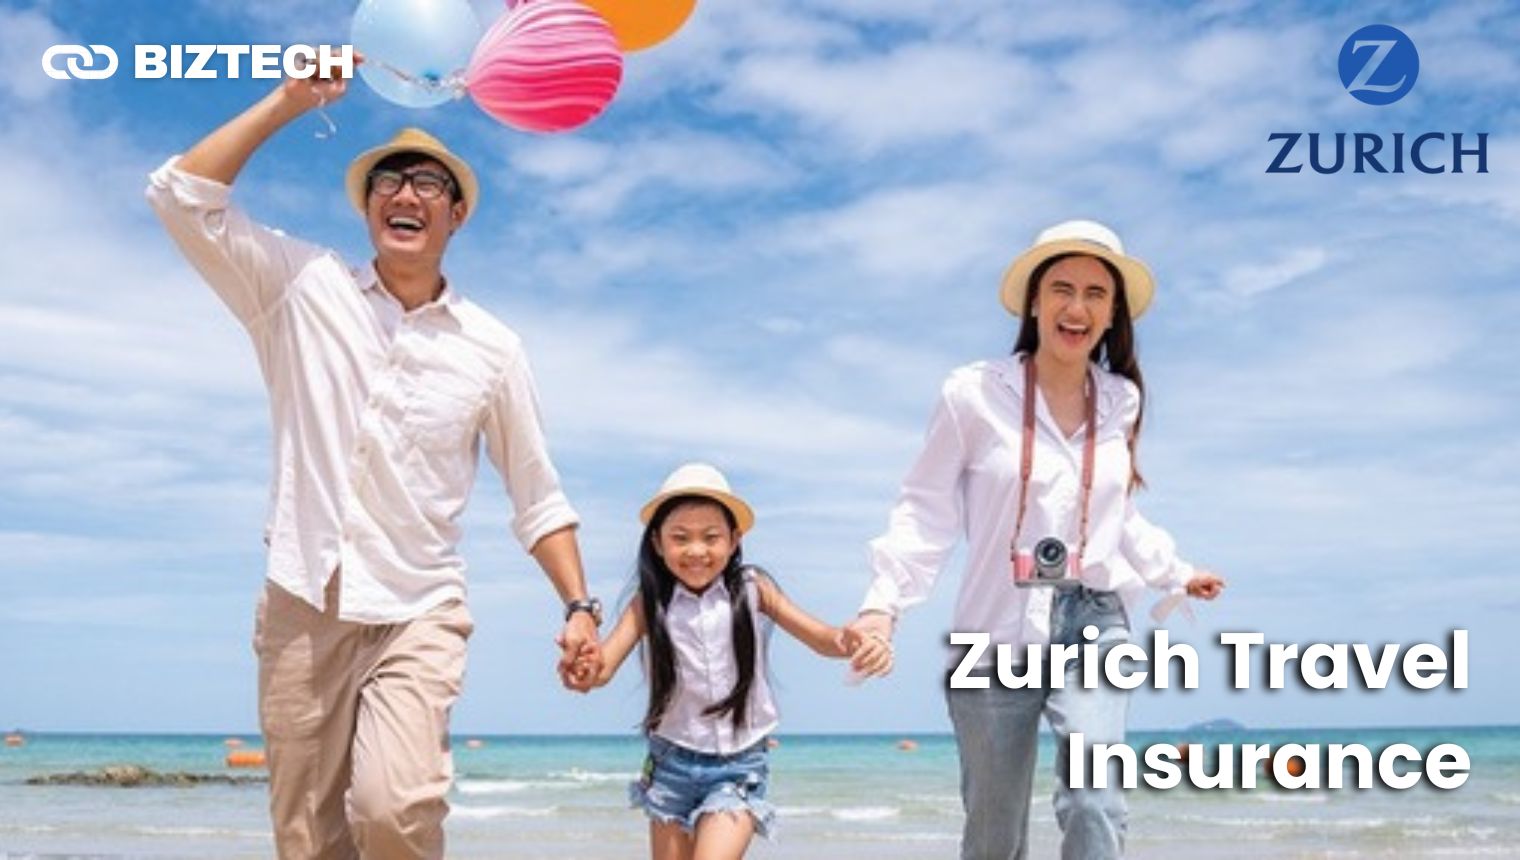 Zurich Travel Insurance